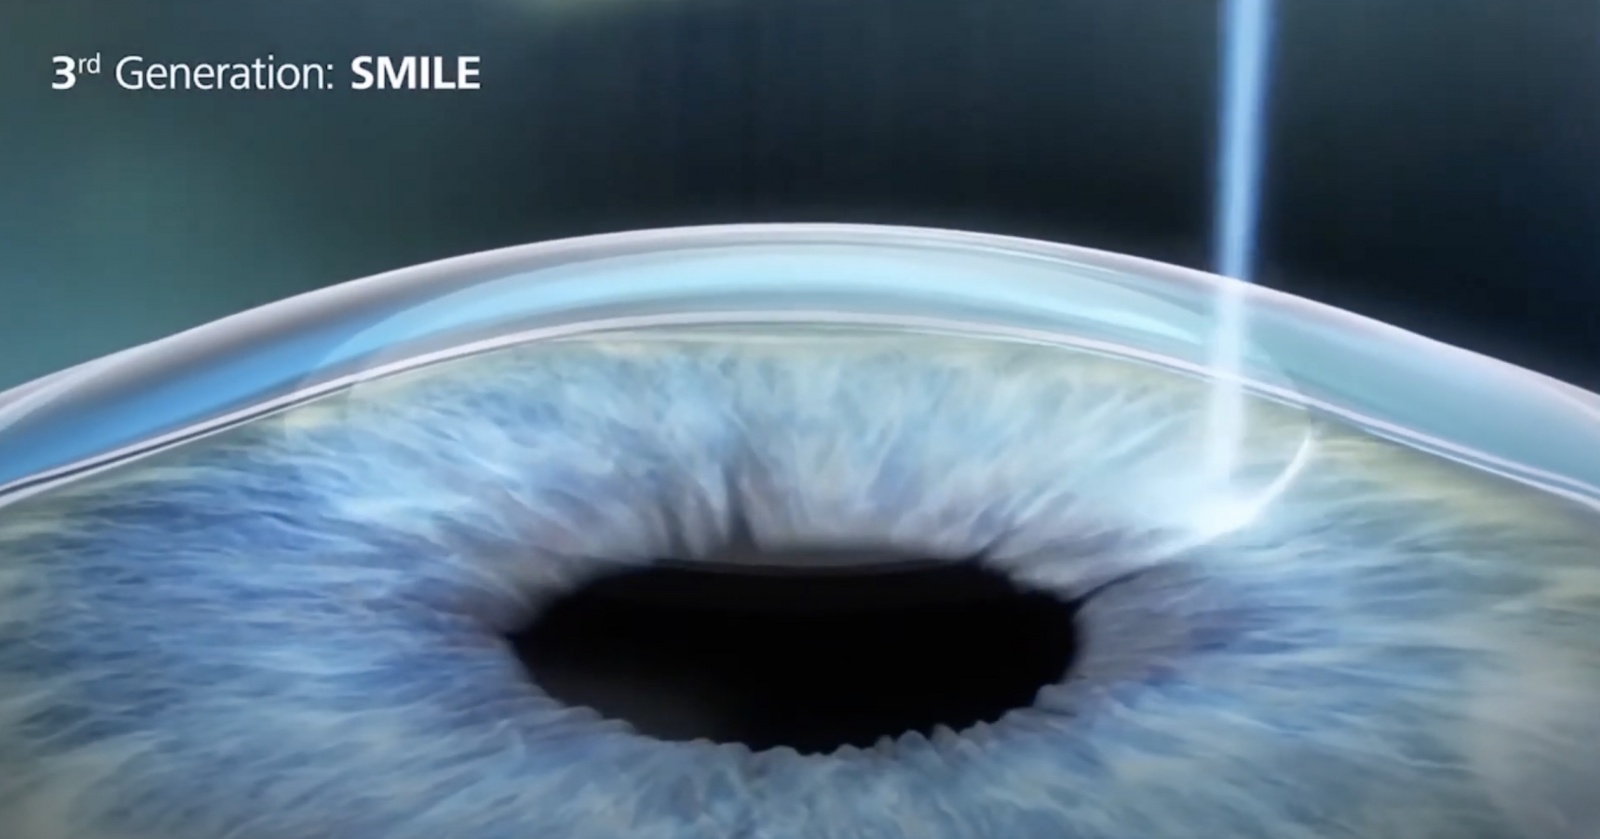 Опыт коррекции зрения под общим наркозом по методике ReLEx Smile или Как лишиться нормального зрения на один глаз - 1